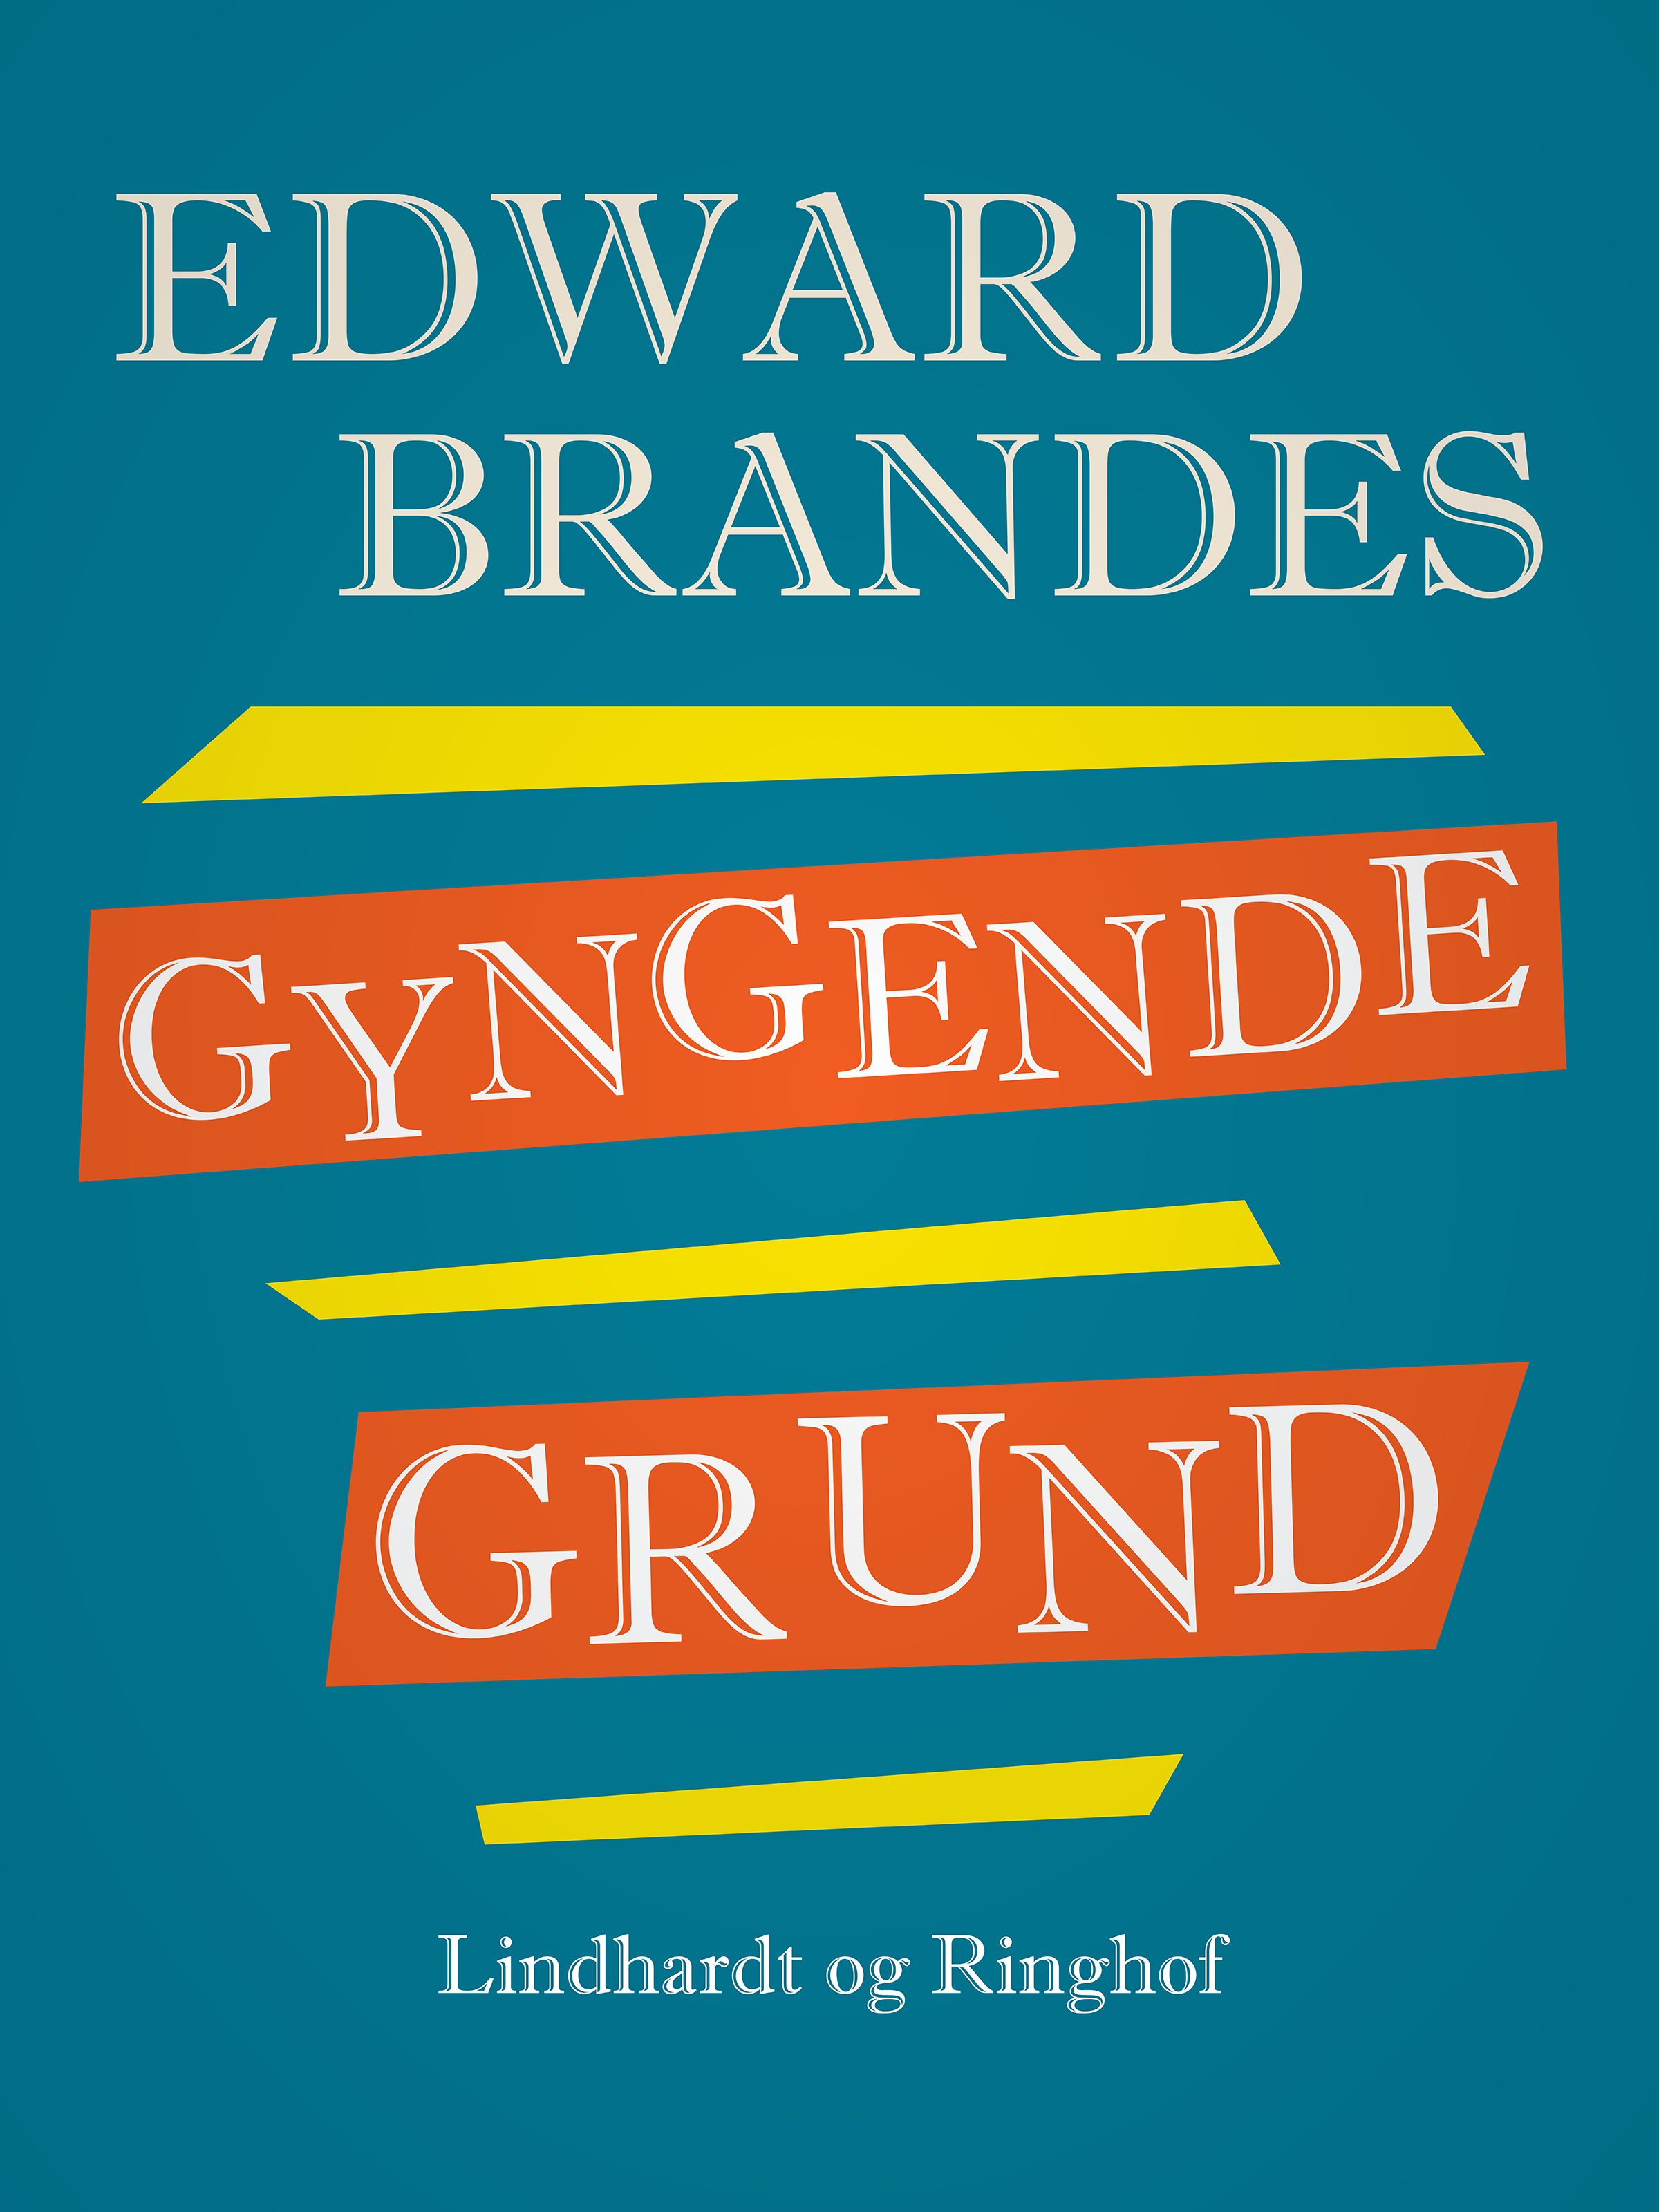 Gyngende grund, e-bok av Edvard Brandes